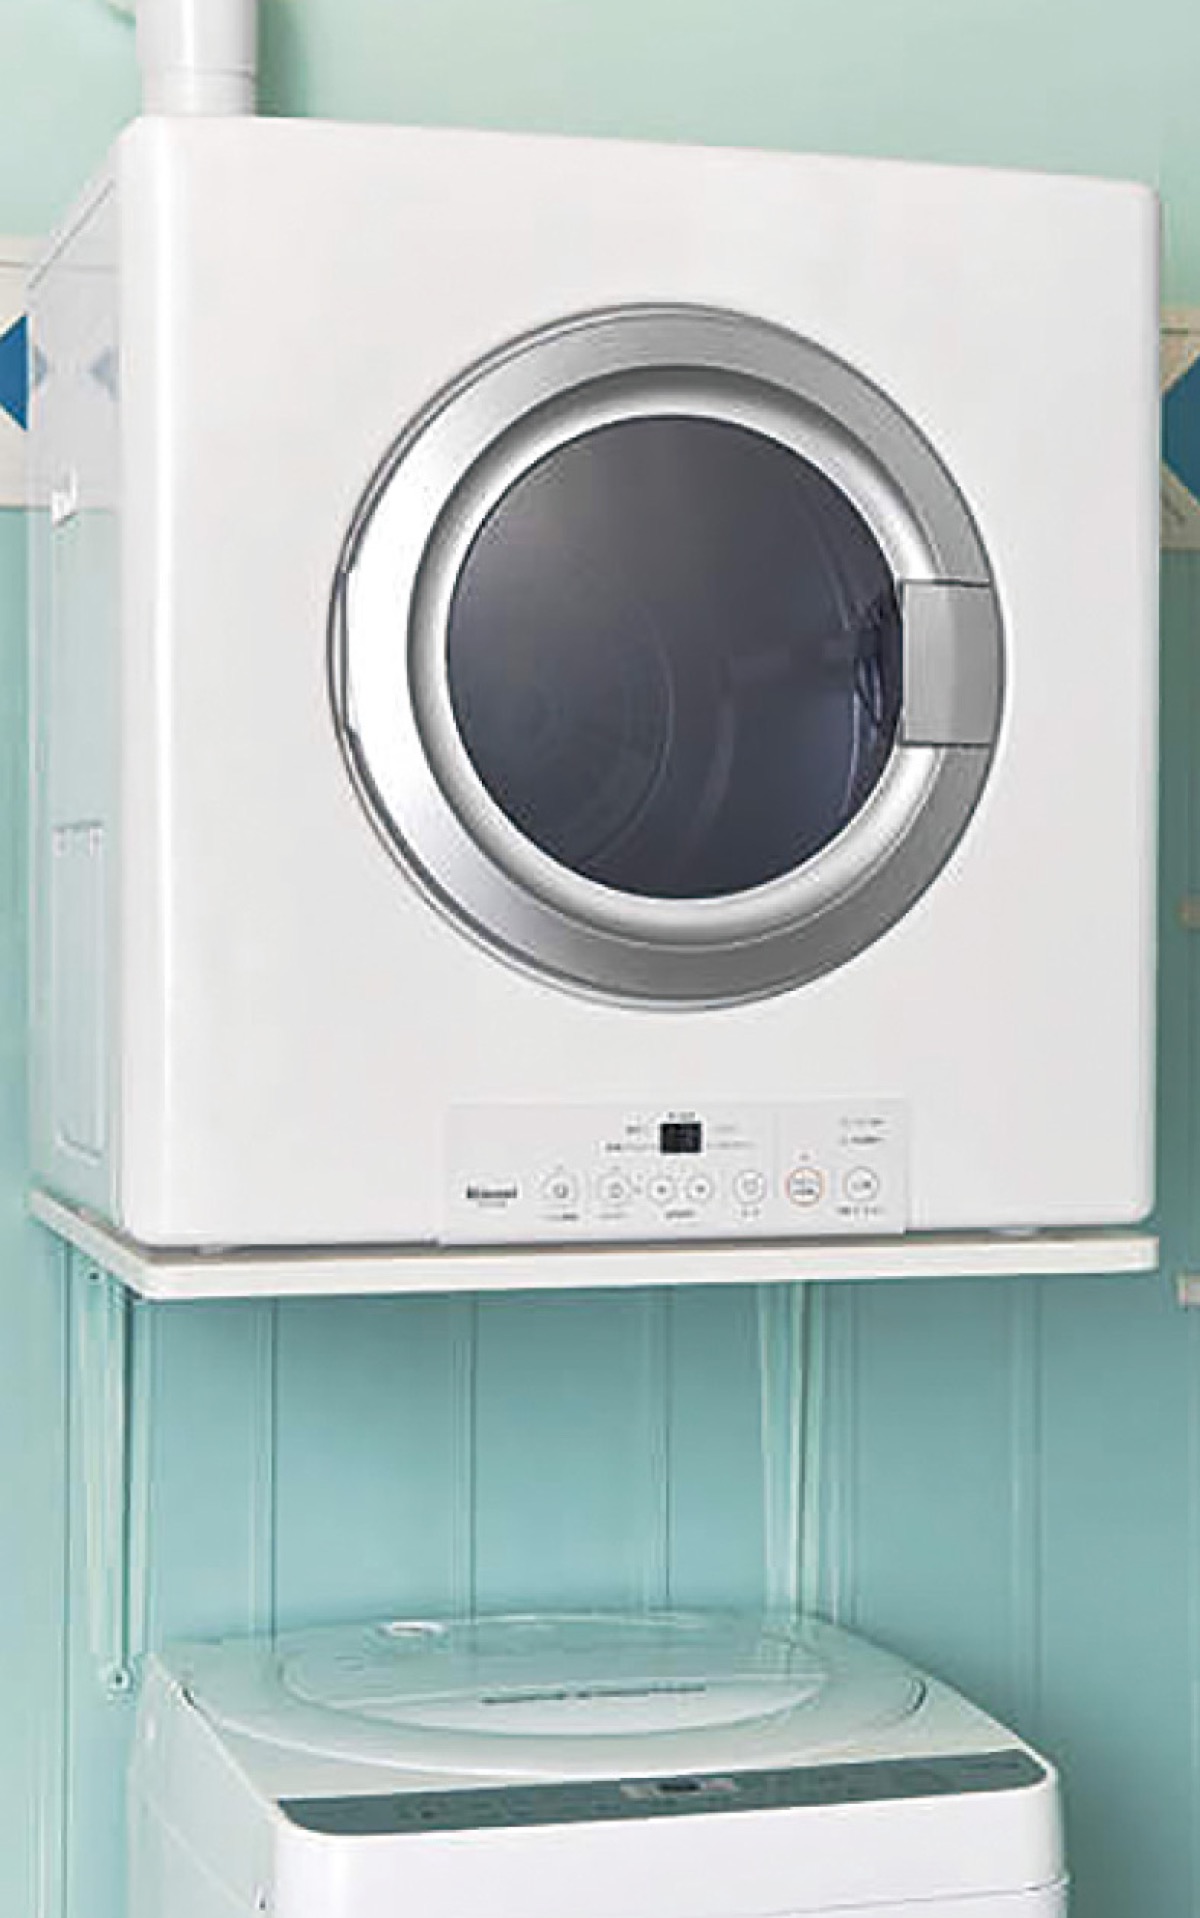 人気衣類乾燥機が格安 1月末まで 見積無料 | さがみはら緑区 | タウンニュース